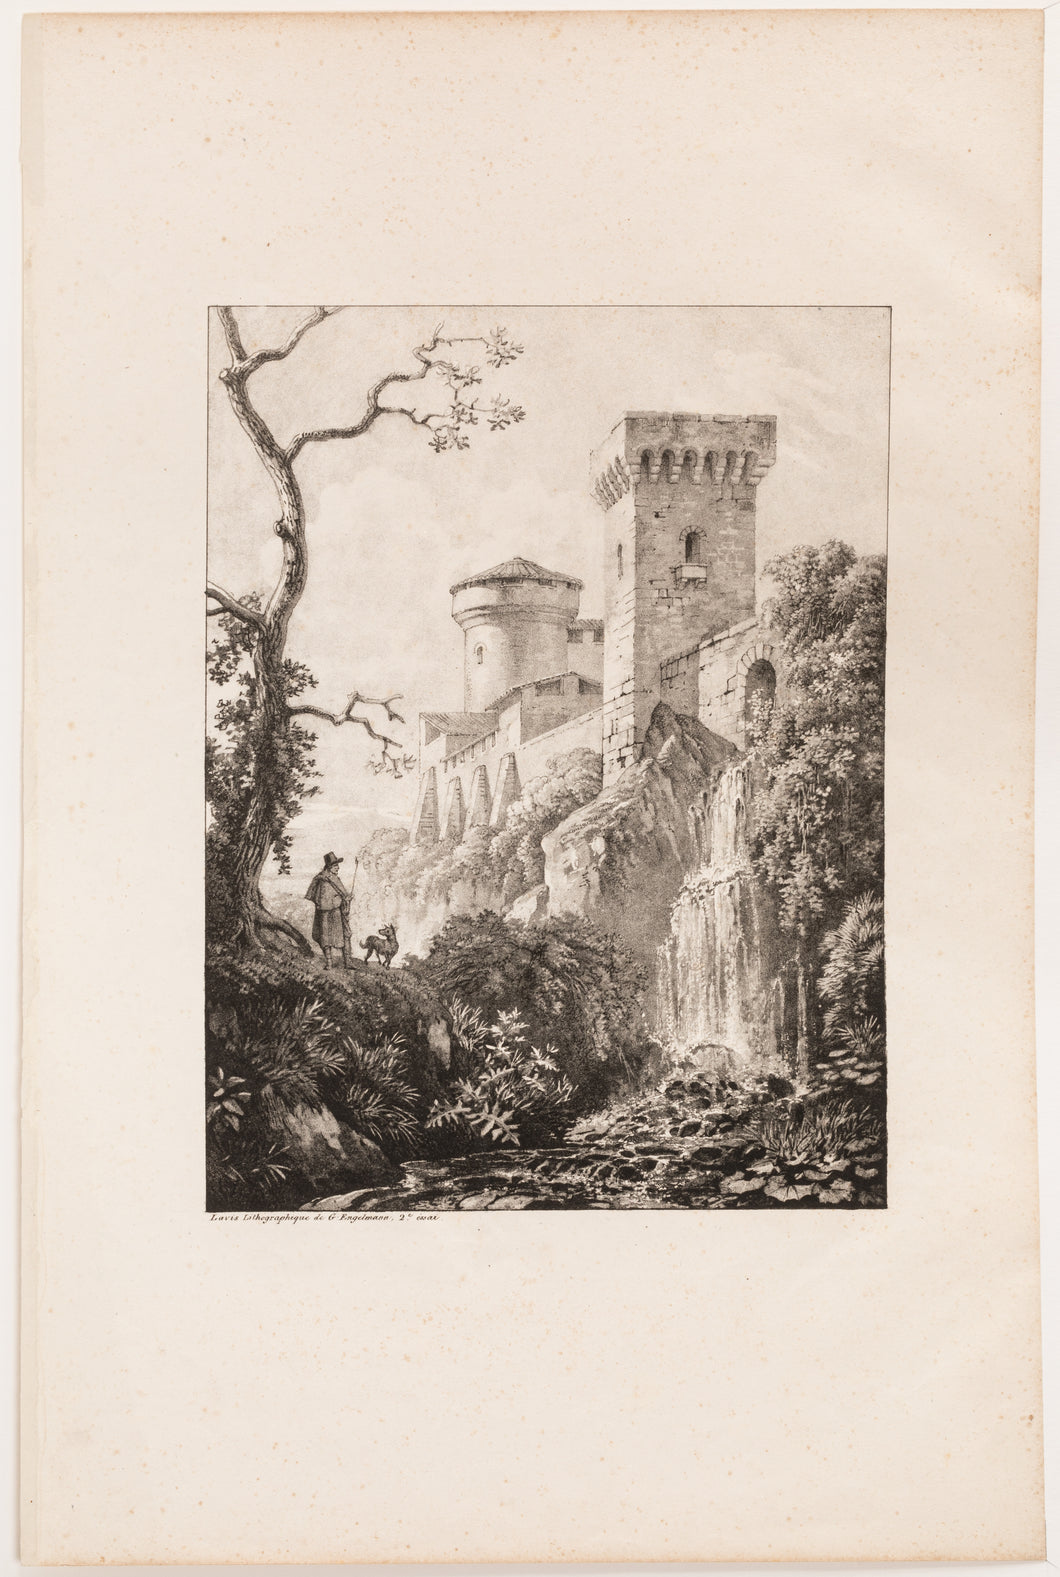 Chute d'eau au pied d'une tour. 1819.